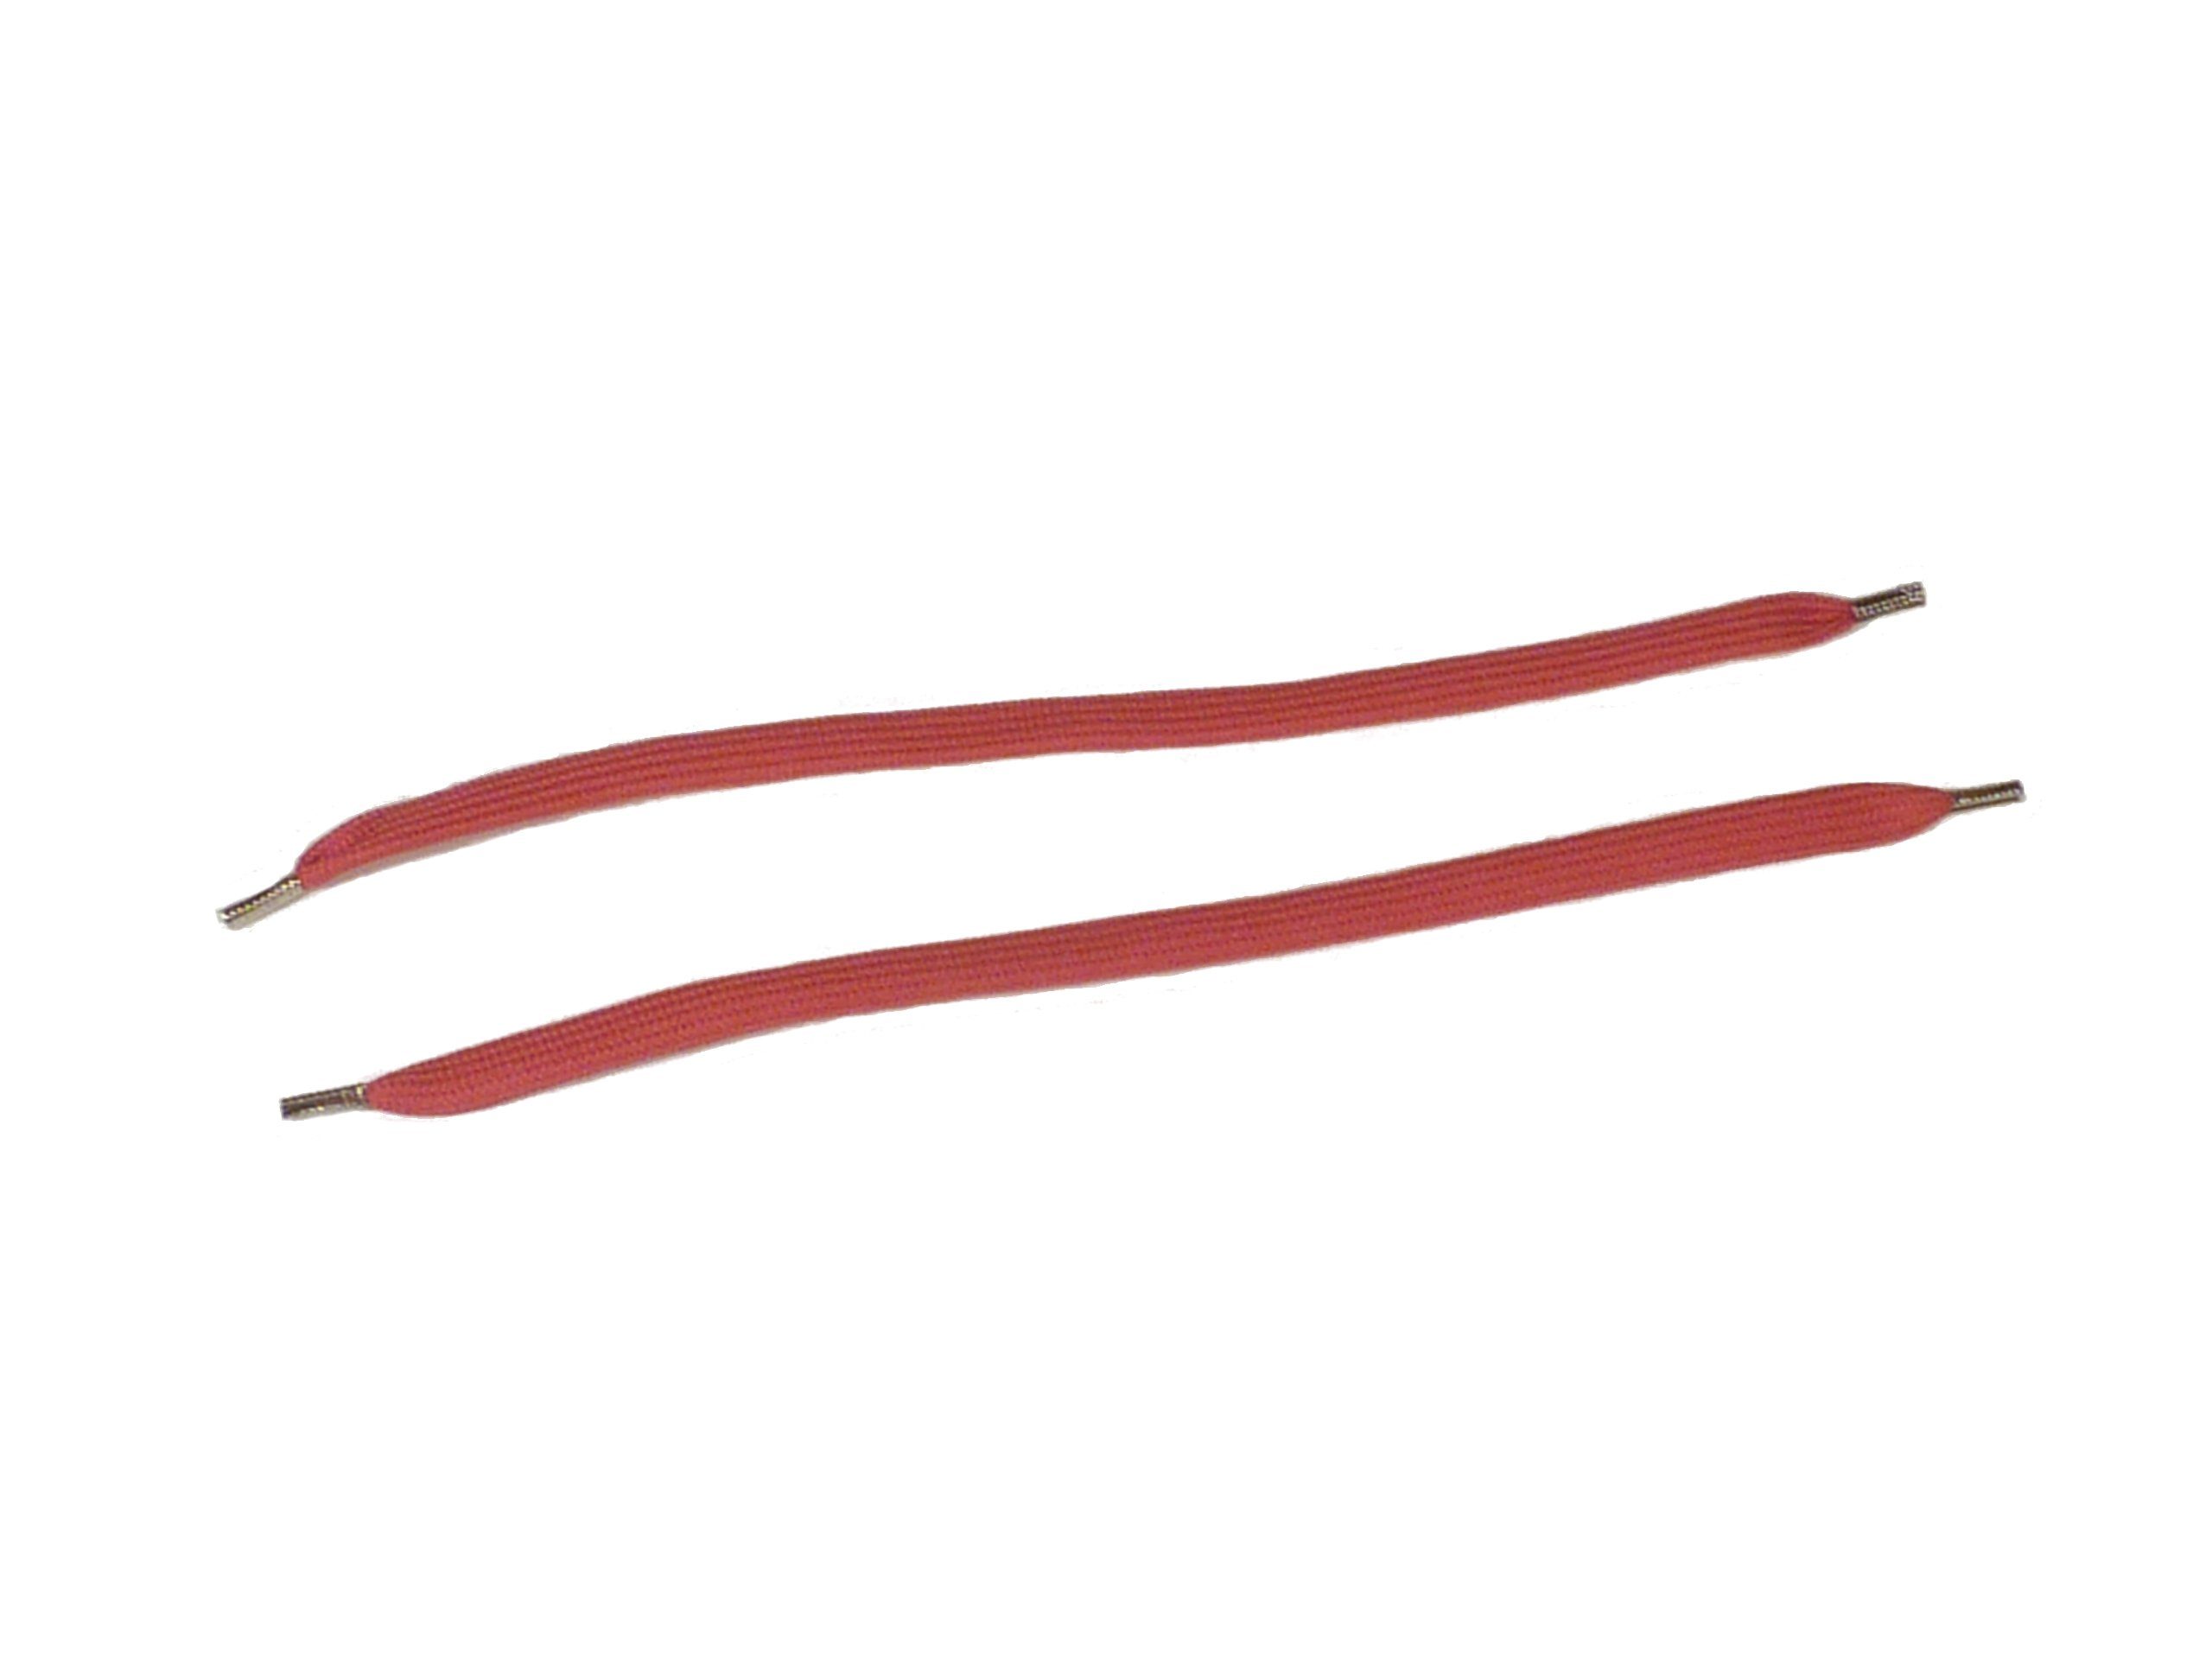 Rema Schnürsenkel Rema Schnürsenkel Pink - flach - ca. 8-10 mm breit für Sie nach Wunschlänge geschnitten und mit Metallenden versehen